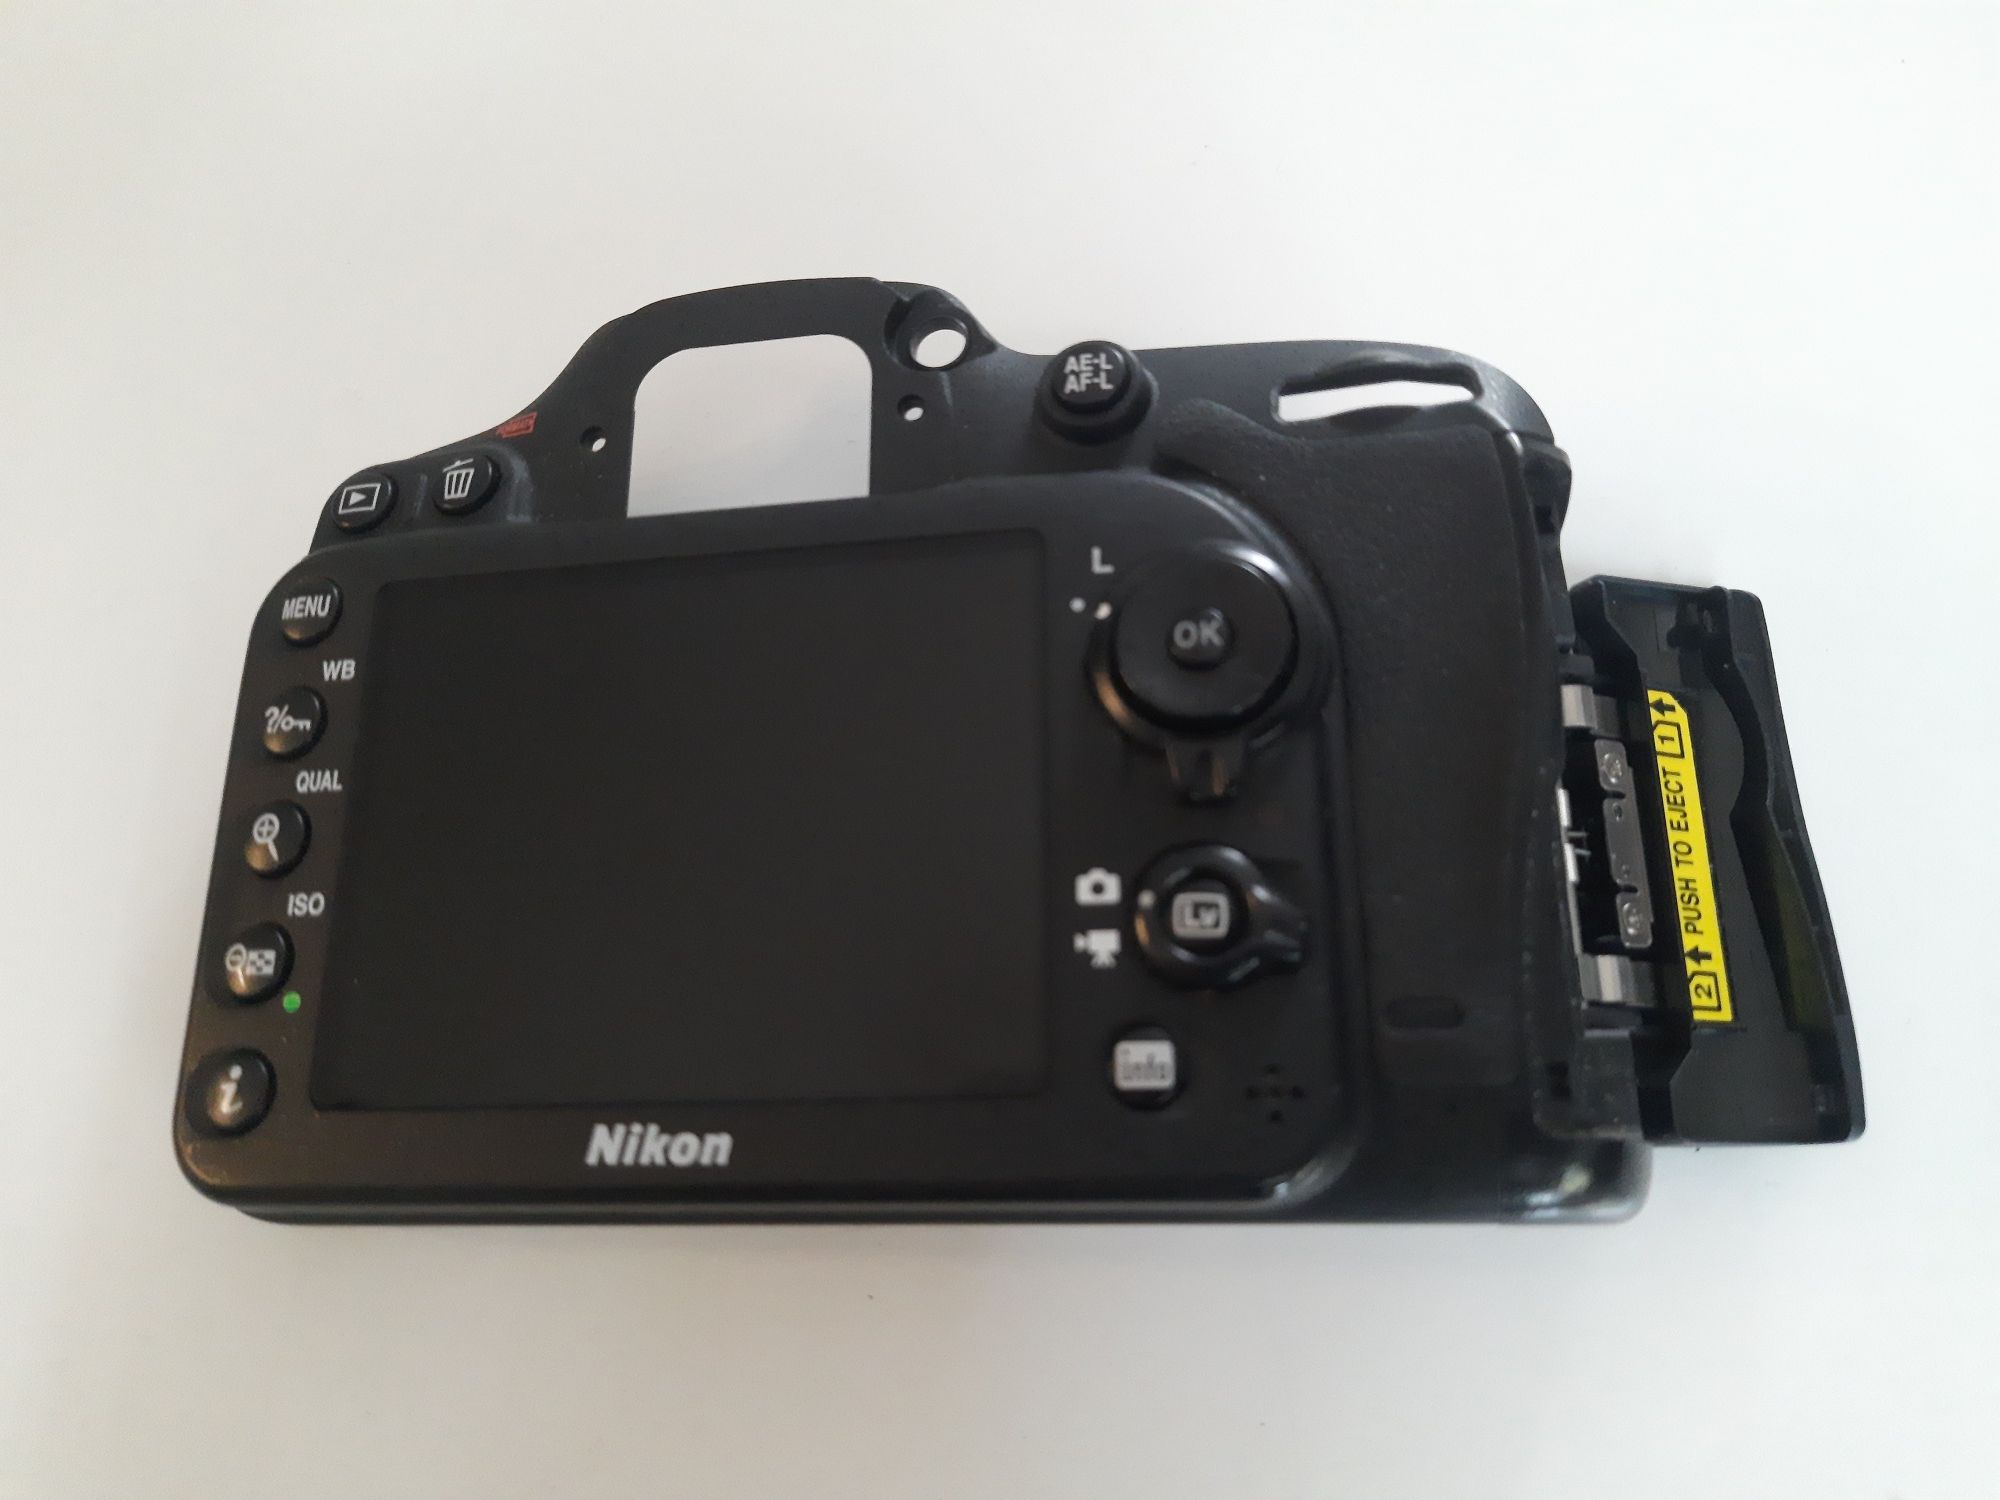 Tylna obudowa Nikon D7100 z wyświetlaczem i przyciskami sprawna